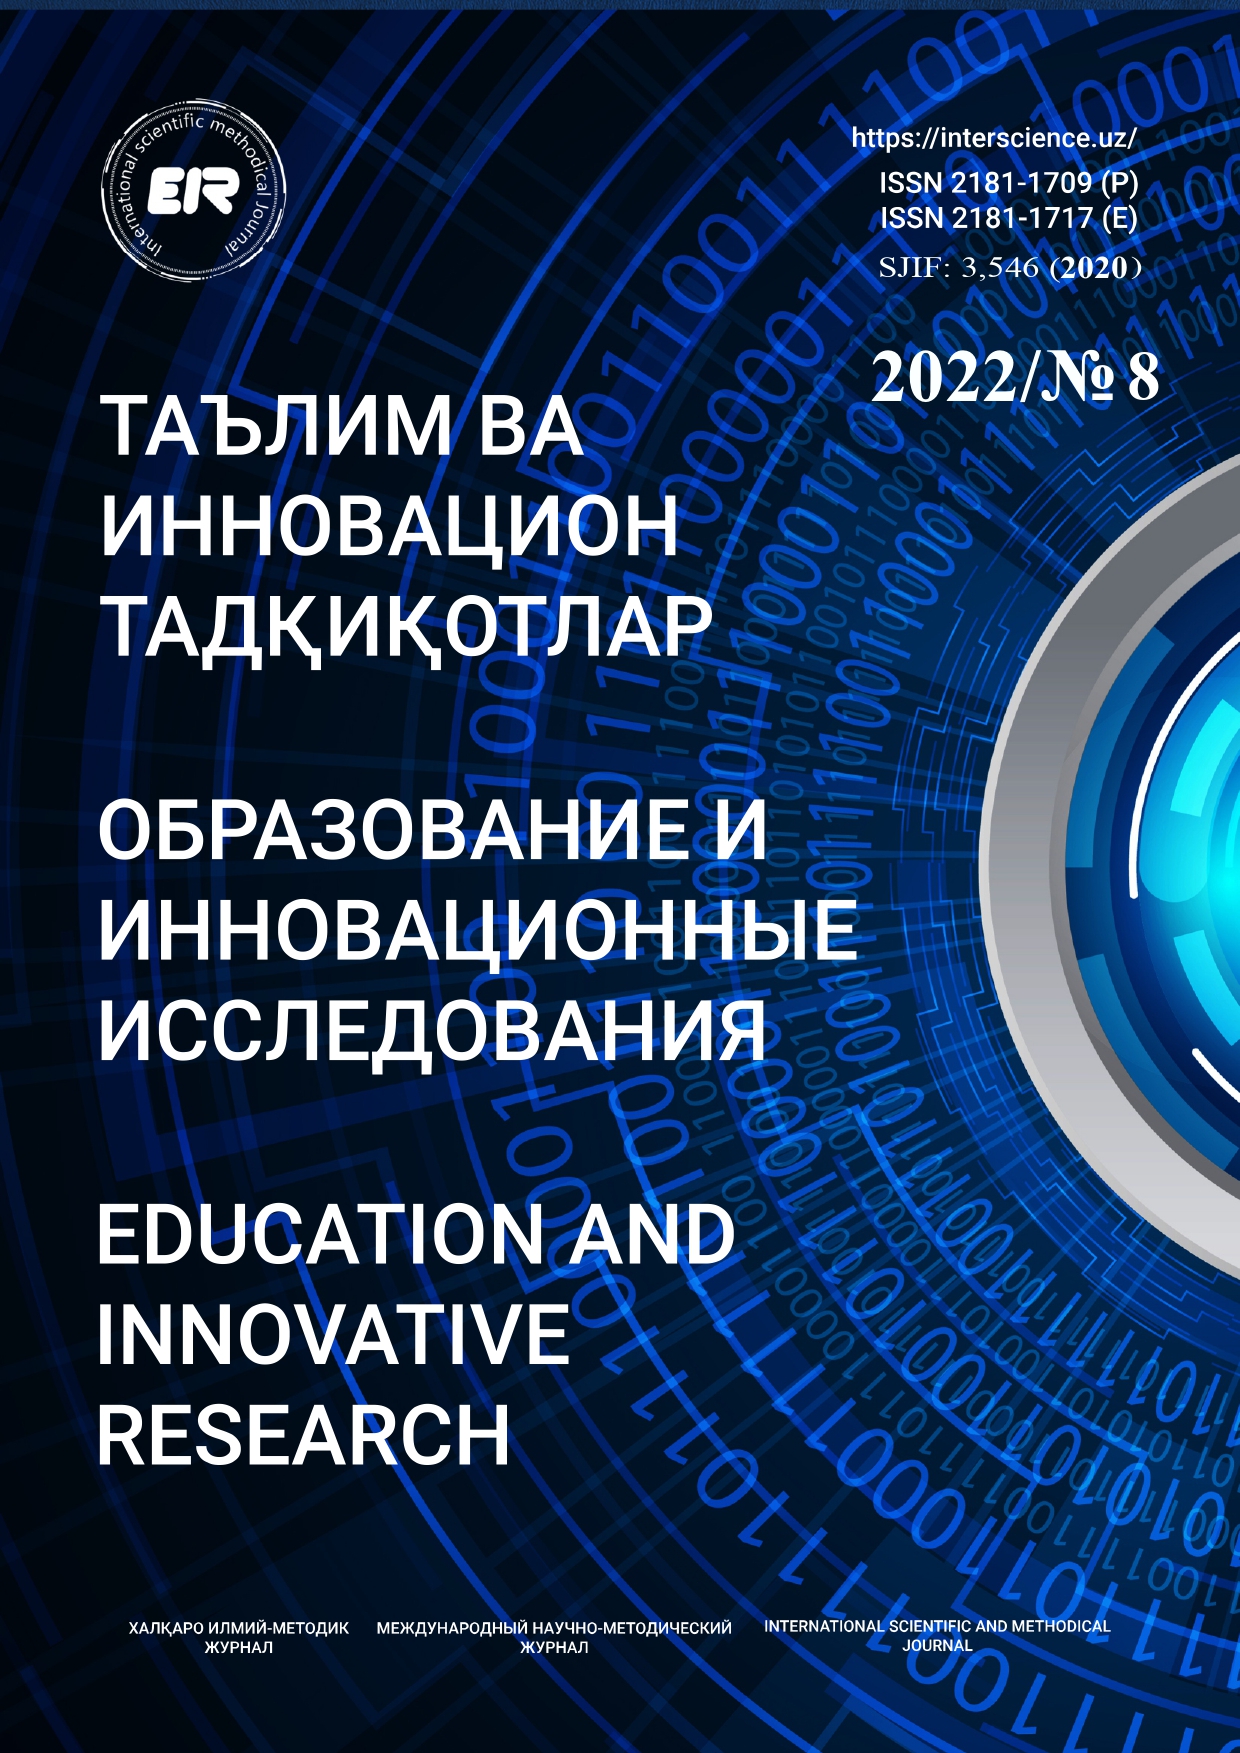 					Показать № 8 (2022): Образование и инновационные исследования
				